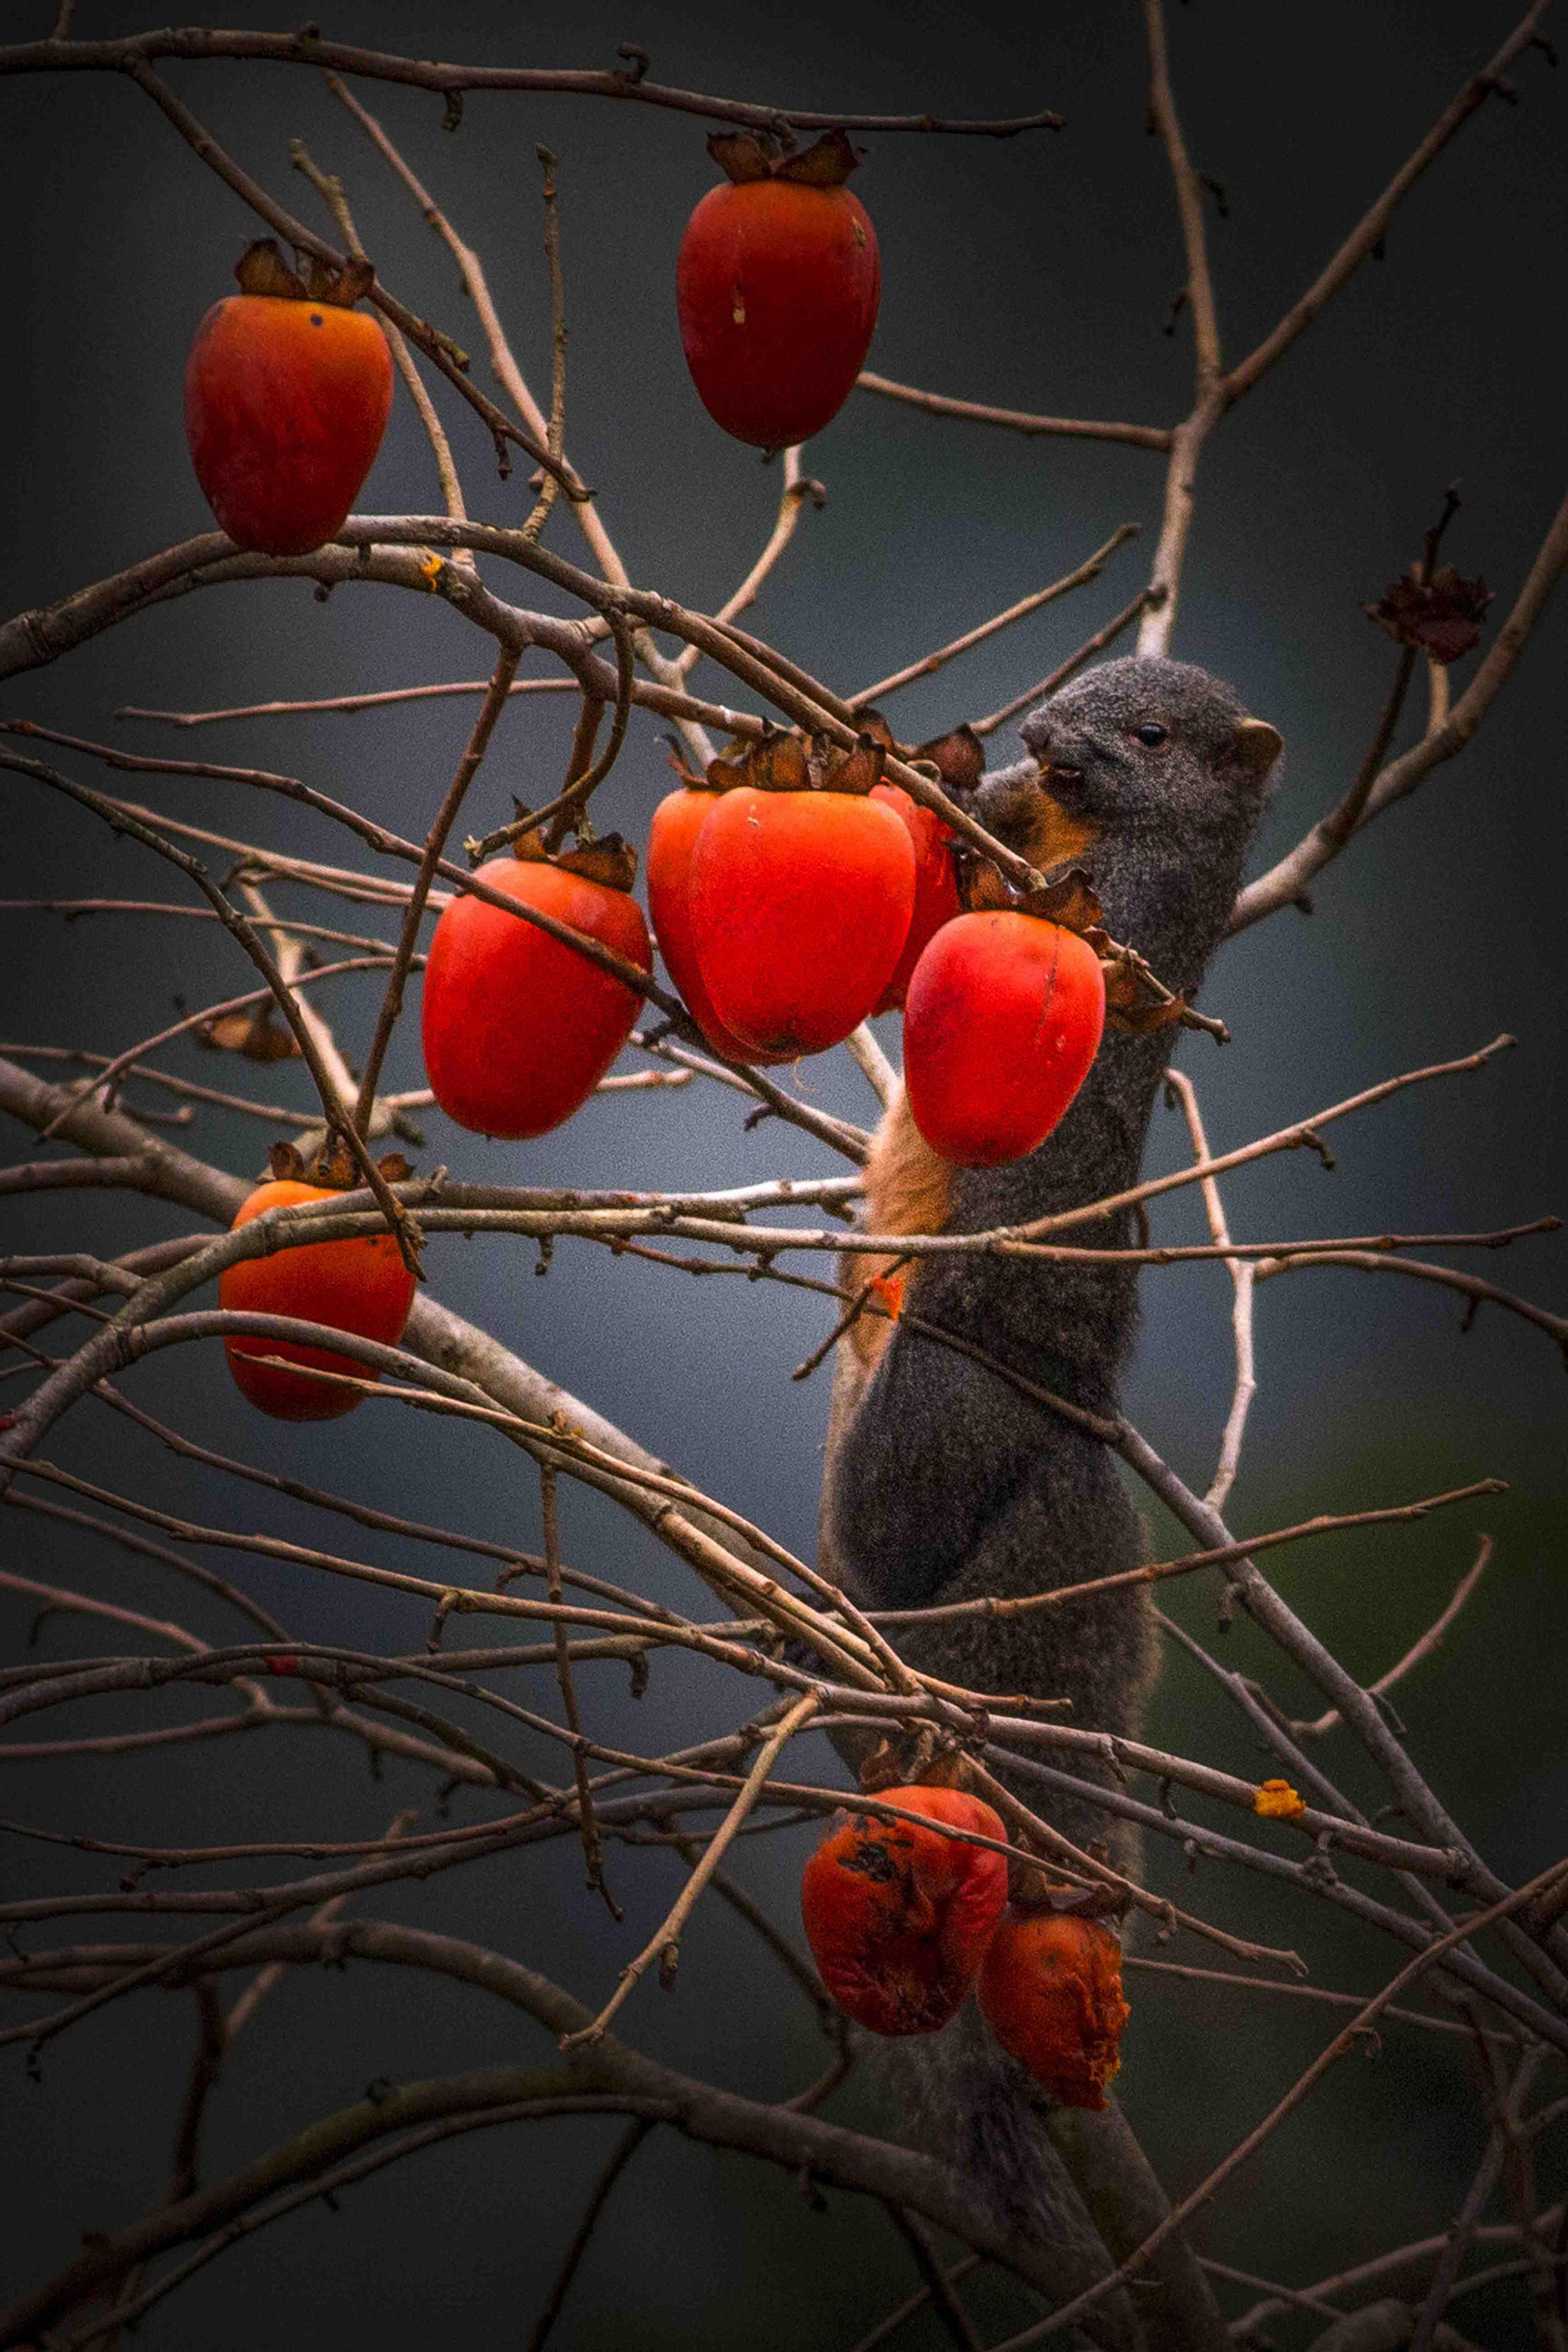 冬日里，一个个火红的柿子像沉甸甸的灯笼悬挂在綦江羊角红军街两旁的树枝上。（通讯员：蒲德贵）